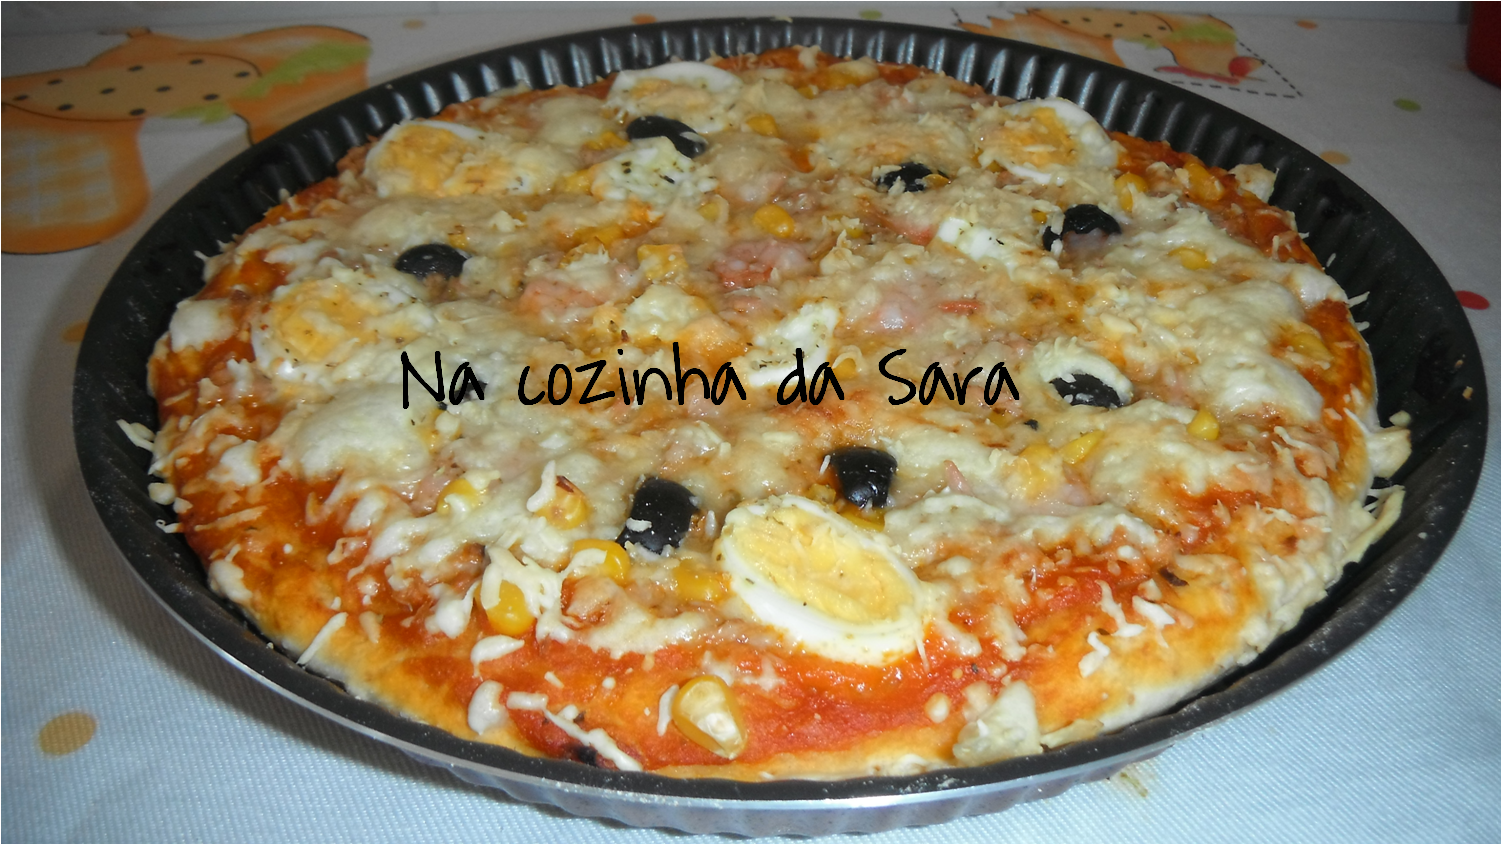 Aula de culinária da Sara: pizza caseira 